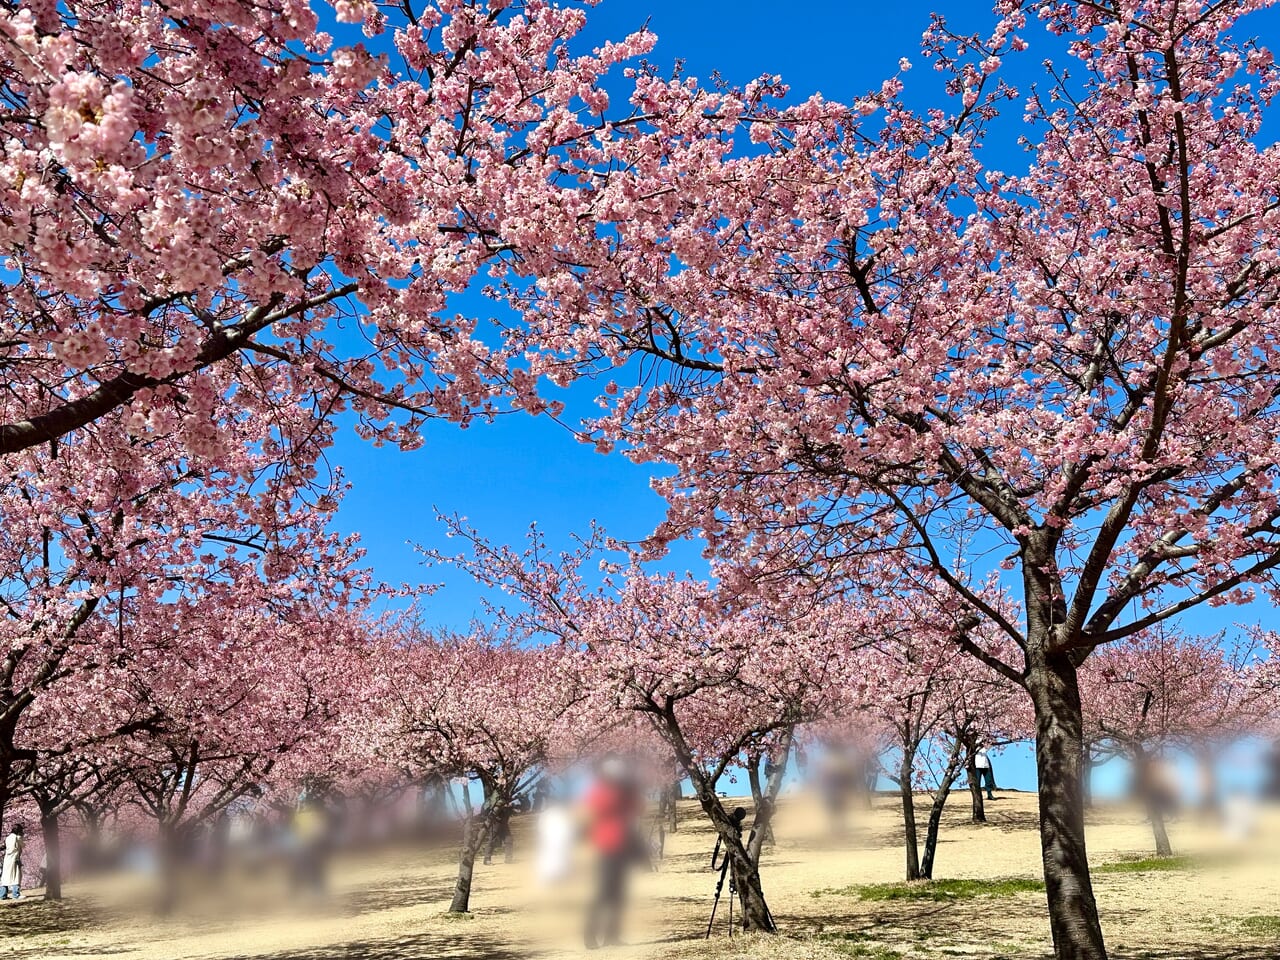 伊勢崎市みらい公園(いせさき市民のもり公園)河津桜